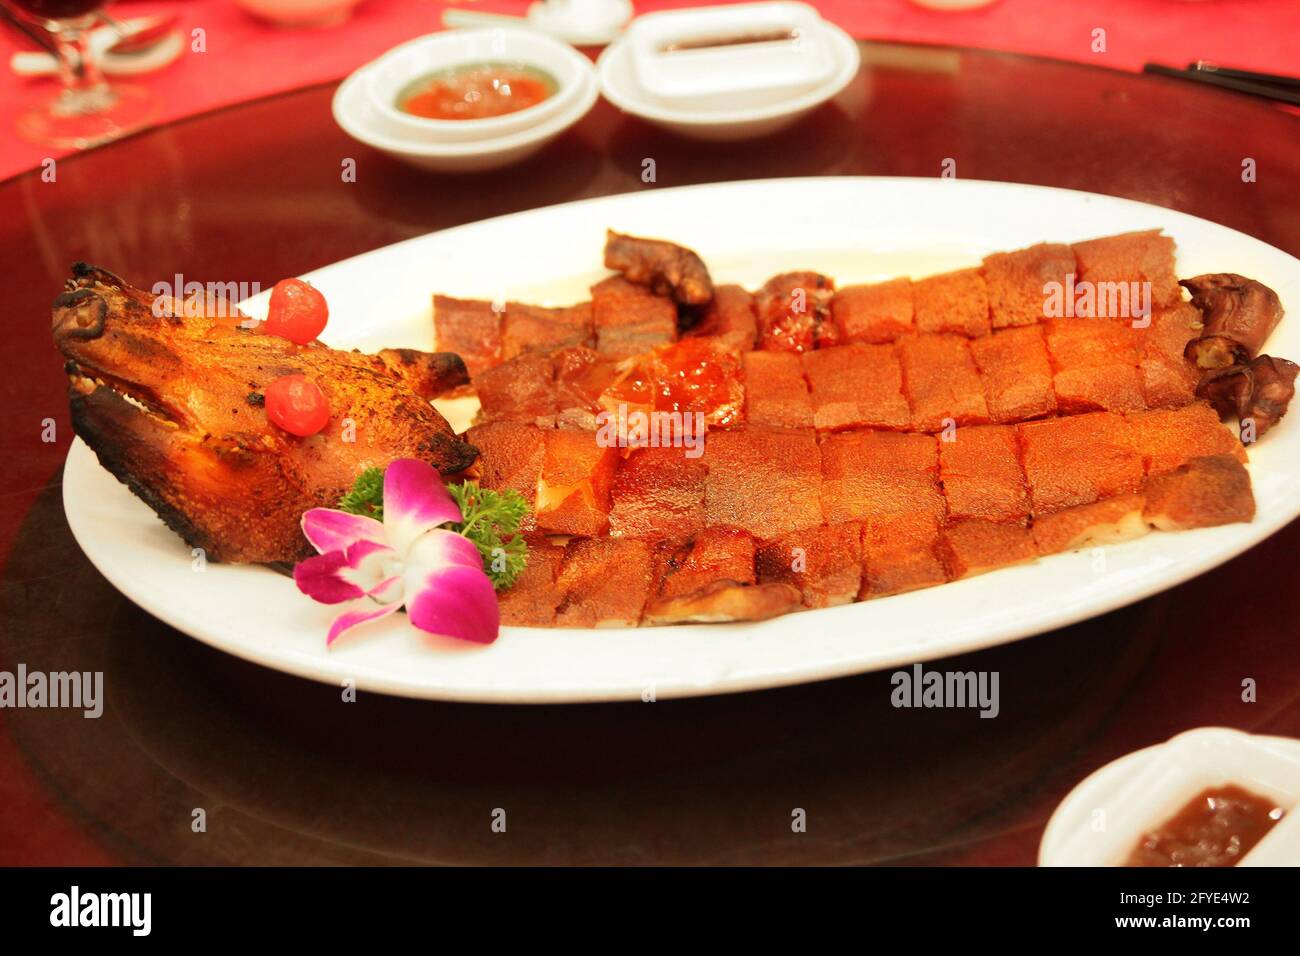 Tradizionale porcellino da latte arrosto barbecue in stile Hong Kong, tipicamente servito in occasione di un matrimonio cinese o di un'occasione speciale. Foto Stock